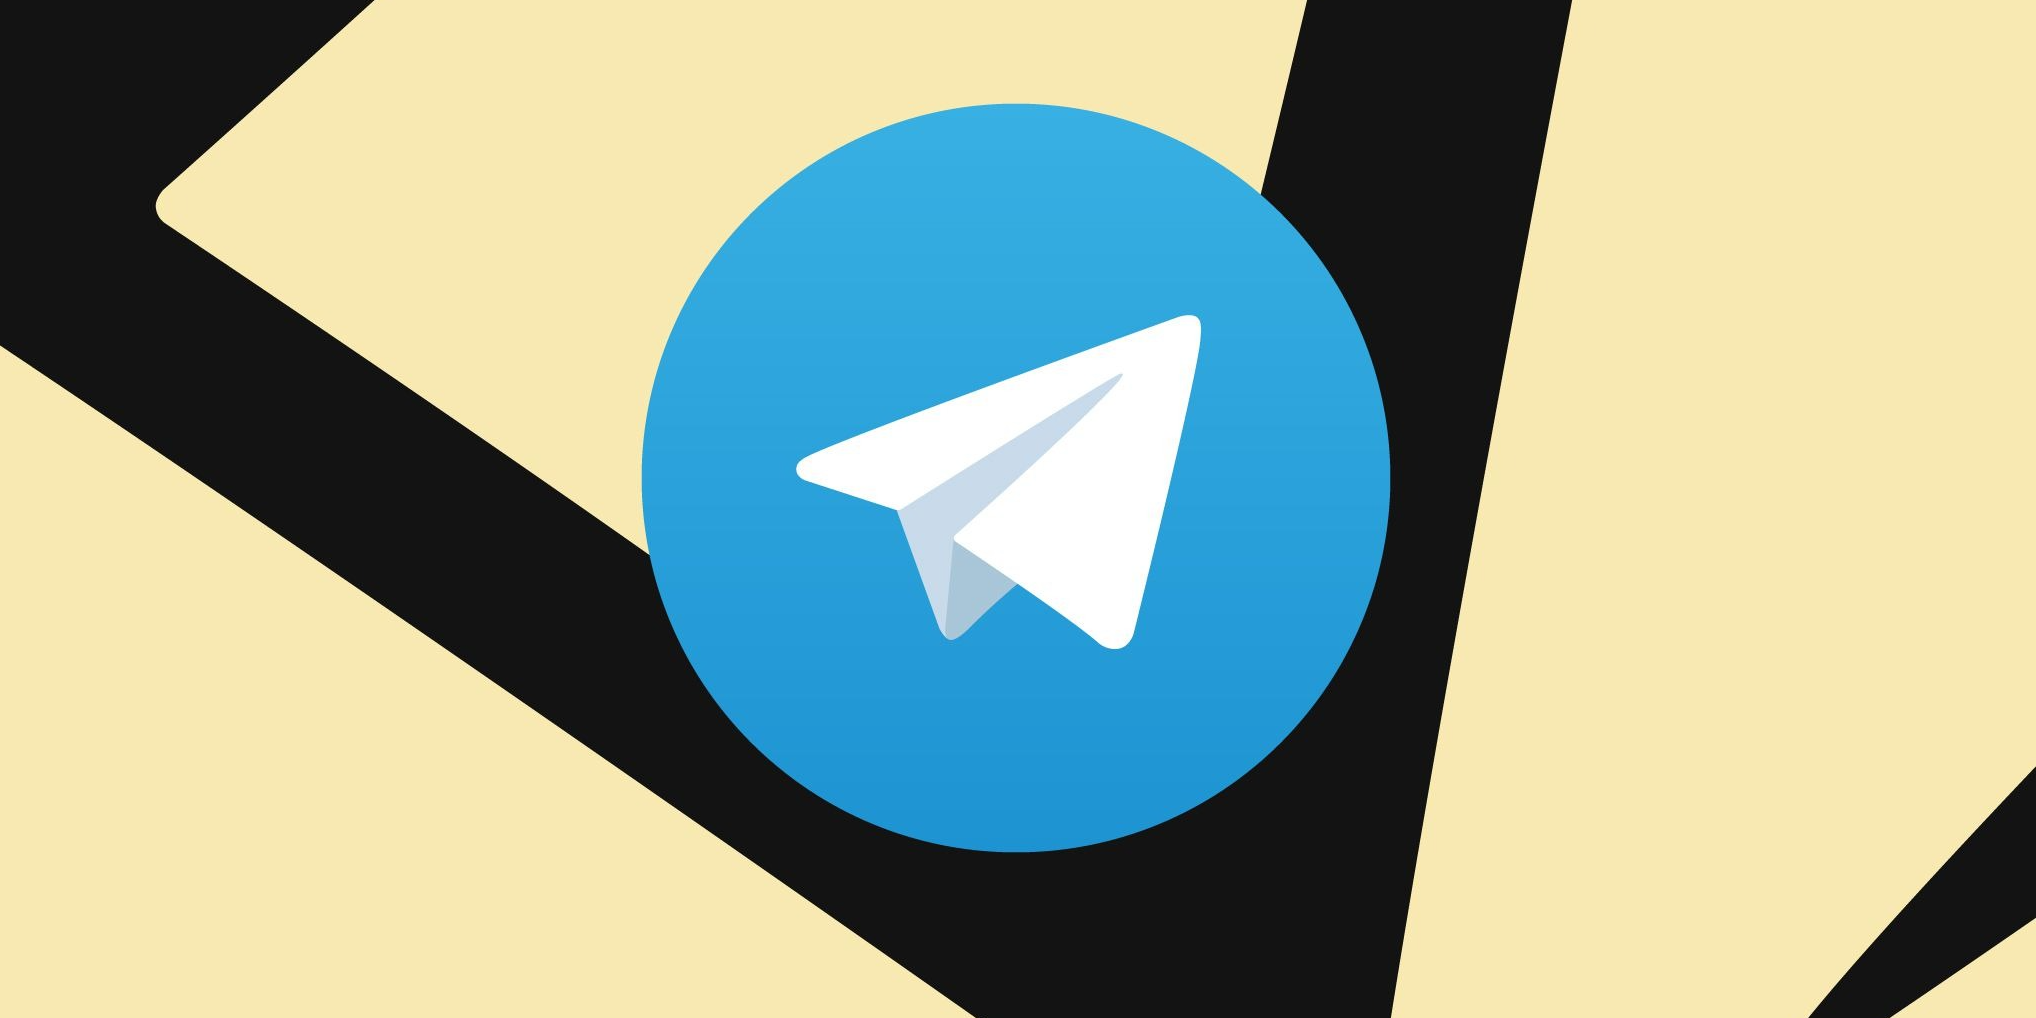 "Stars" Telegram: Durov lanzó el pago en miniapps y a través de bots